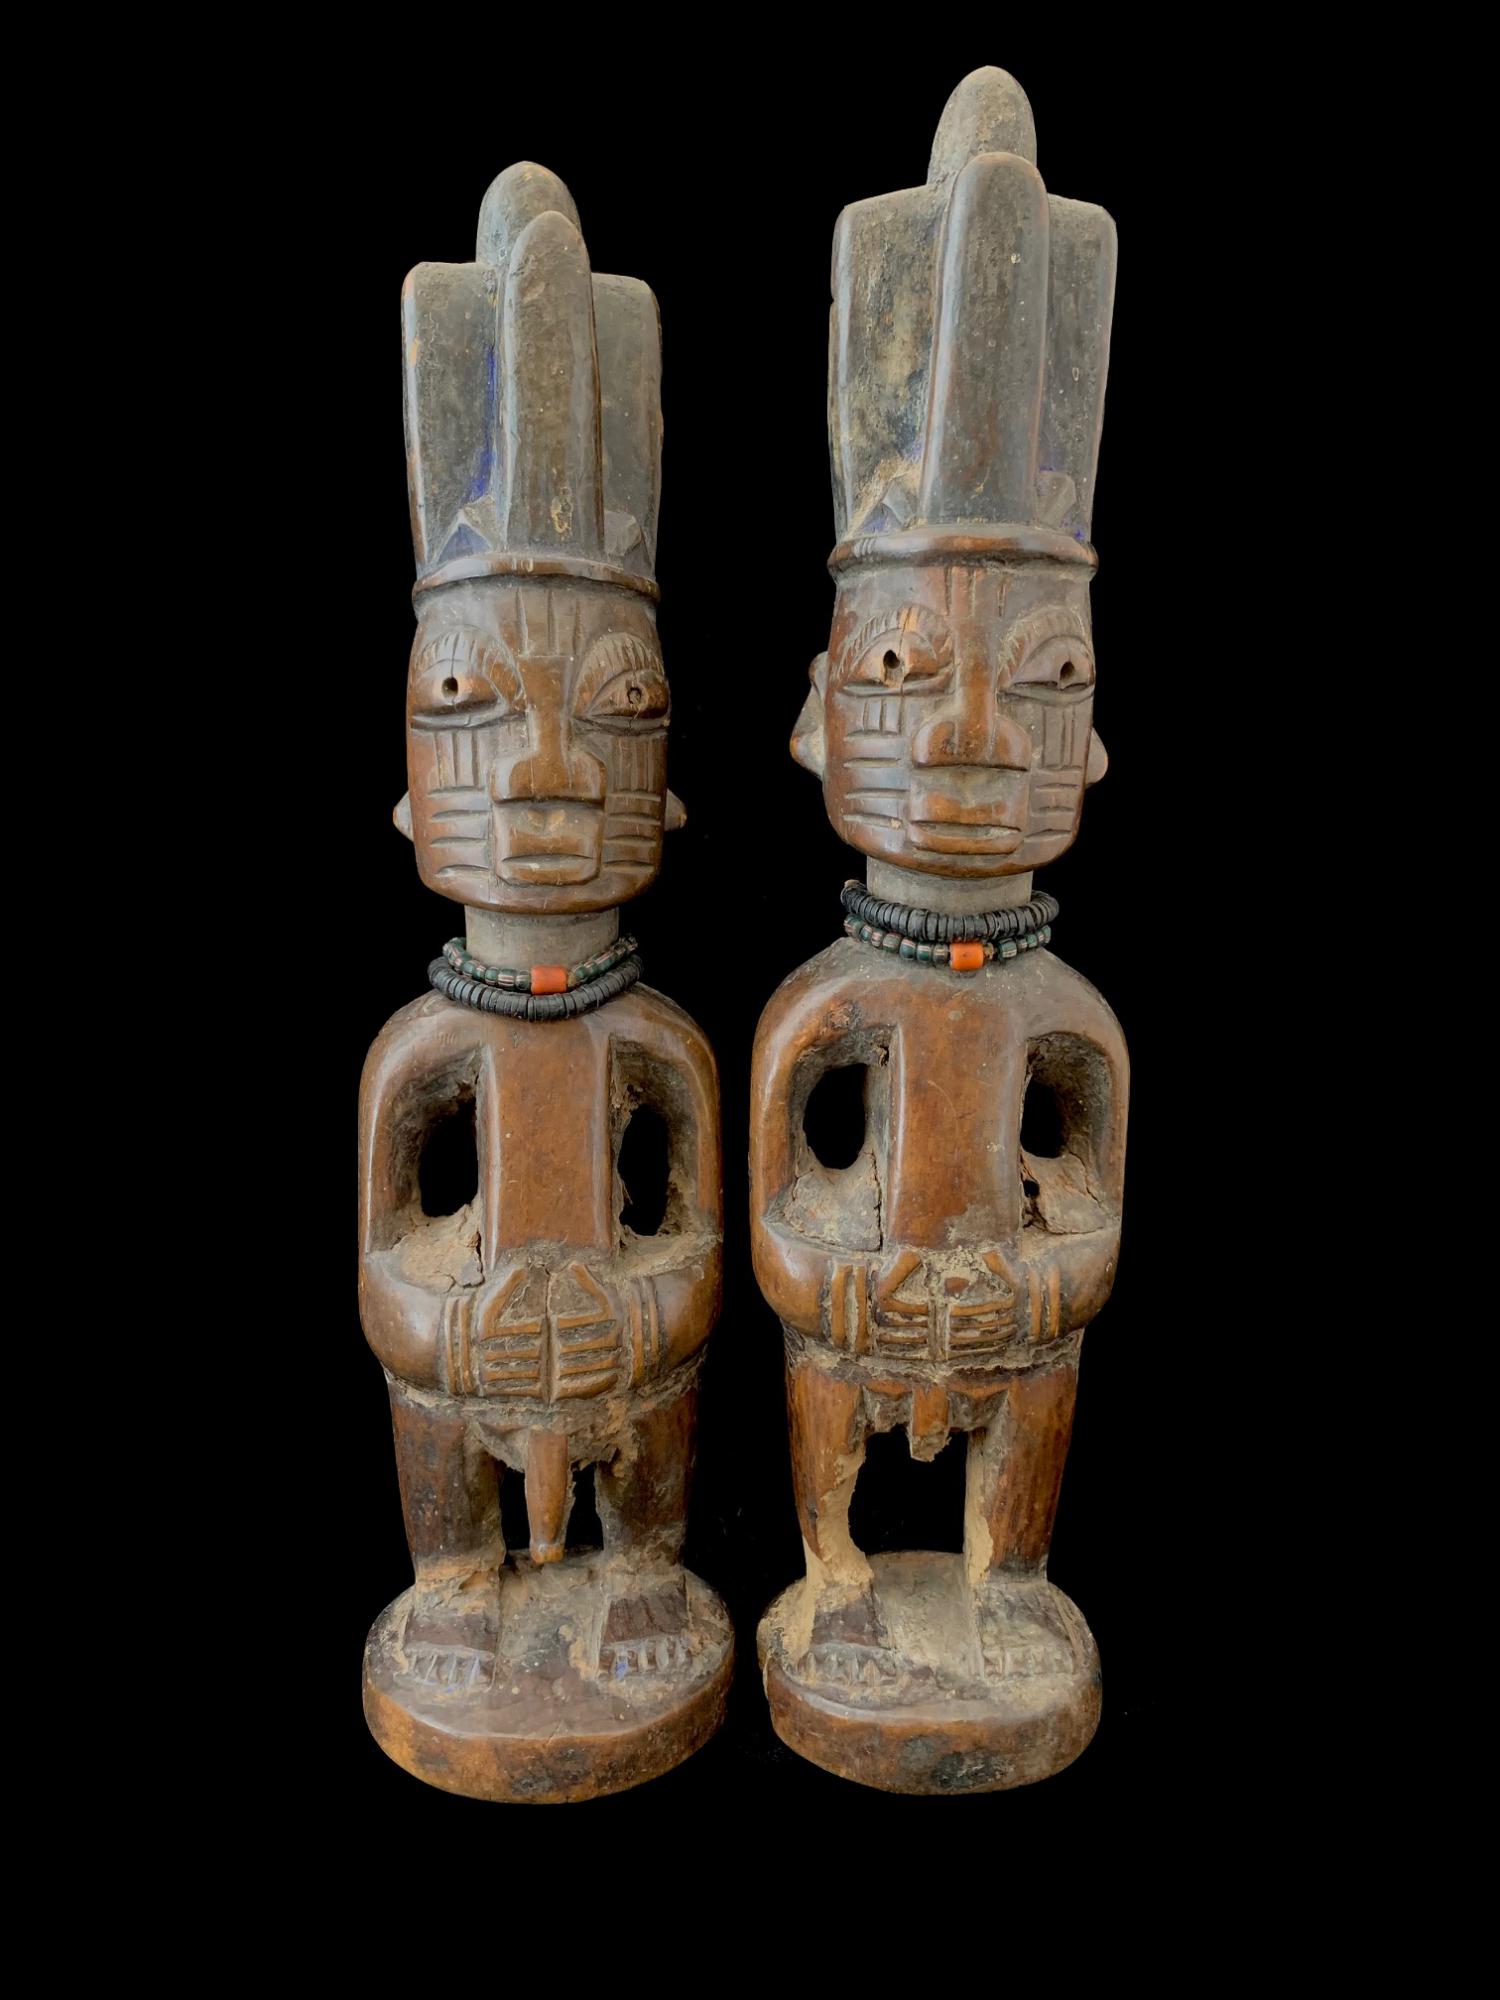 Ibeji Twin Figures - Yoruba, Nigeria (JL20) - Sold